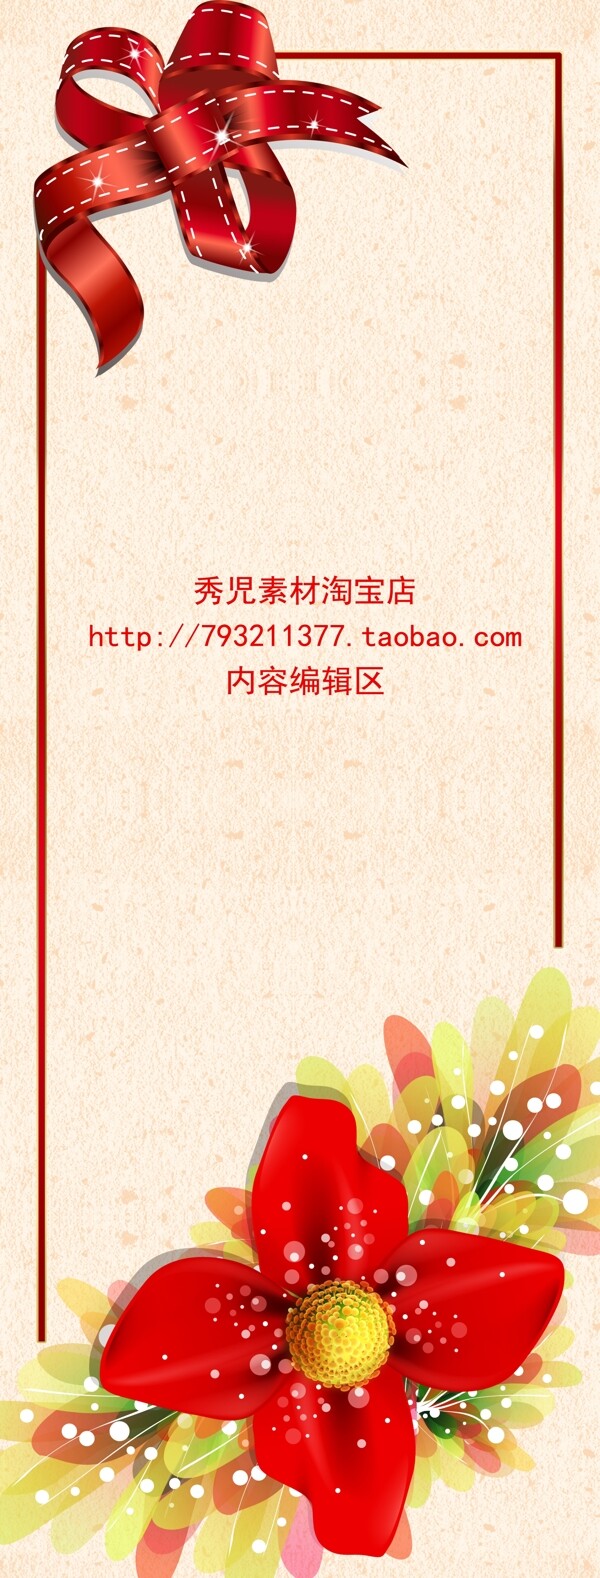 红色中国结展架设计模板海报素材画面元素